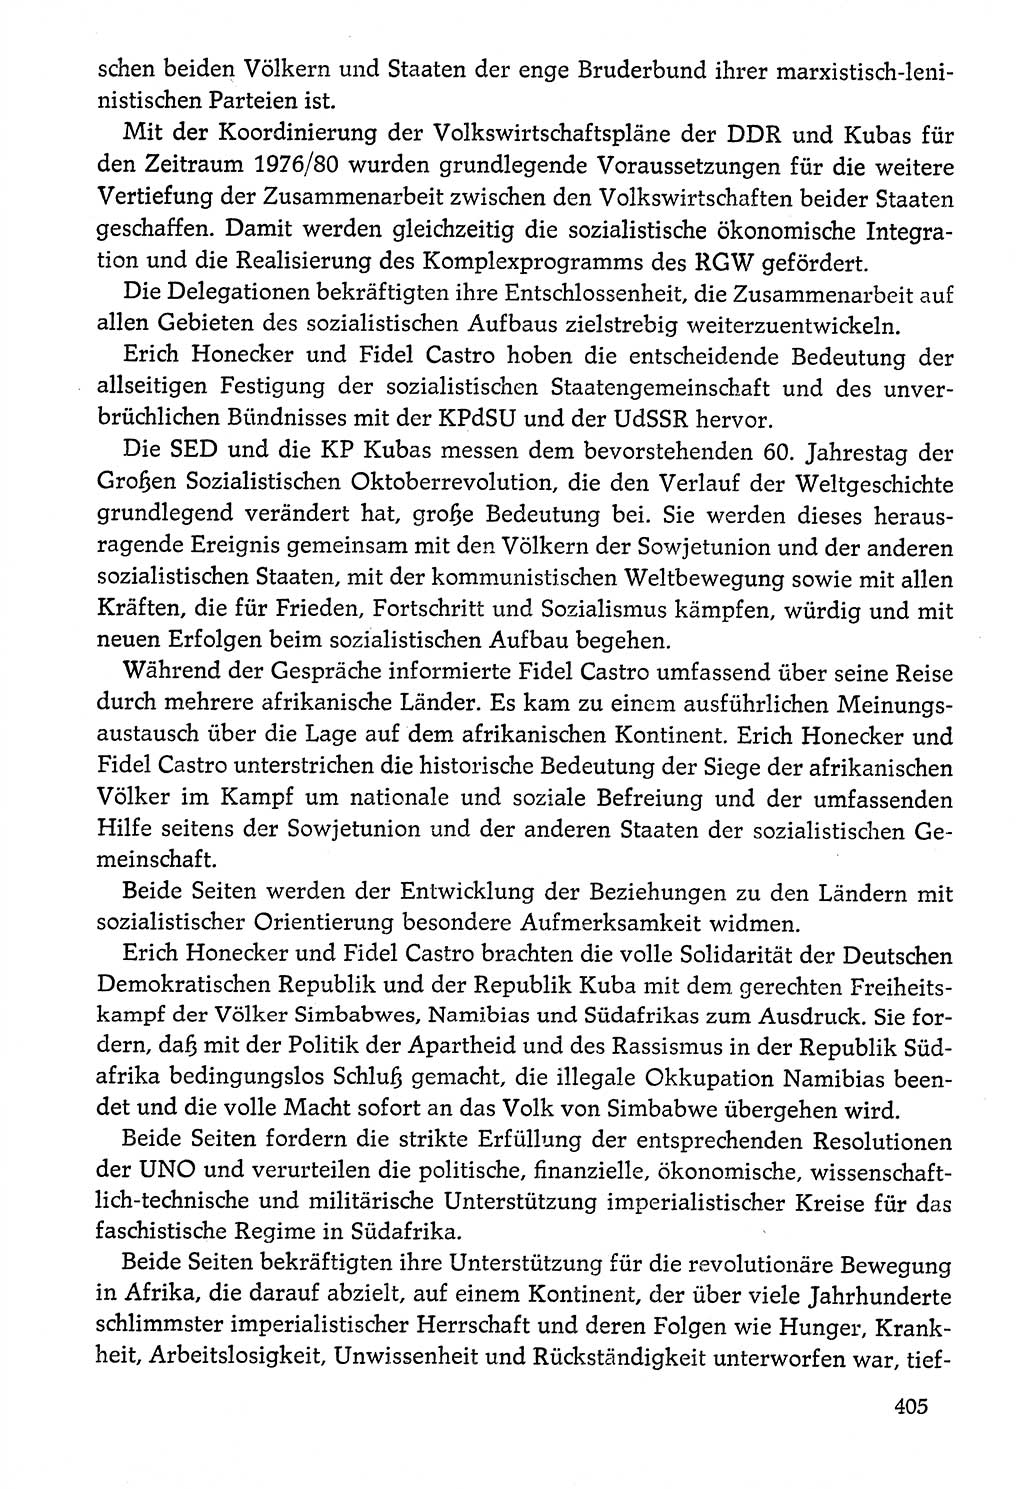 Dokumente der Sozialistischen Einheitspartei Deutschlands (SED) [Deutsche Demokratische Republik (DDR)] 1976-1977, Seite 405 (Dok. SED DDR 1976-1977, S. 405)